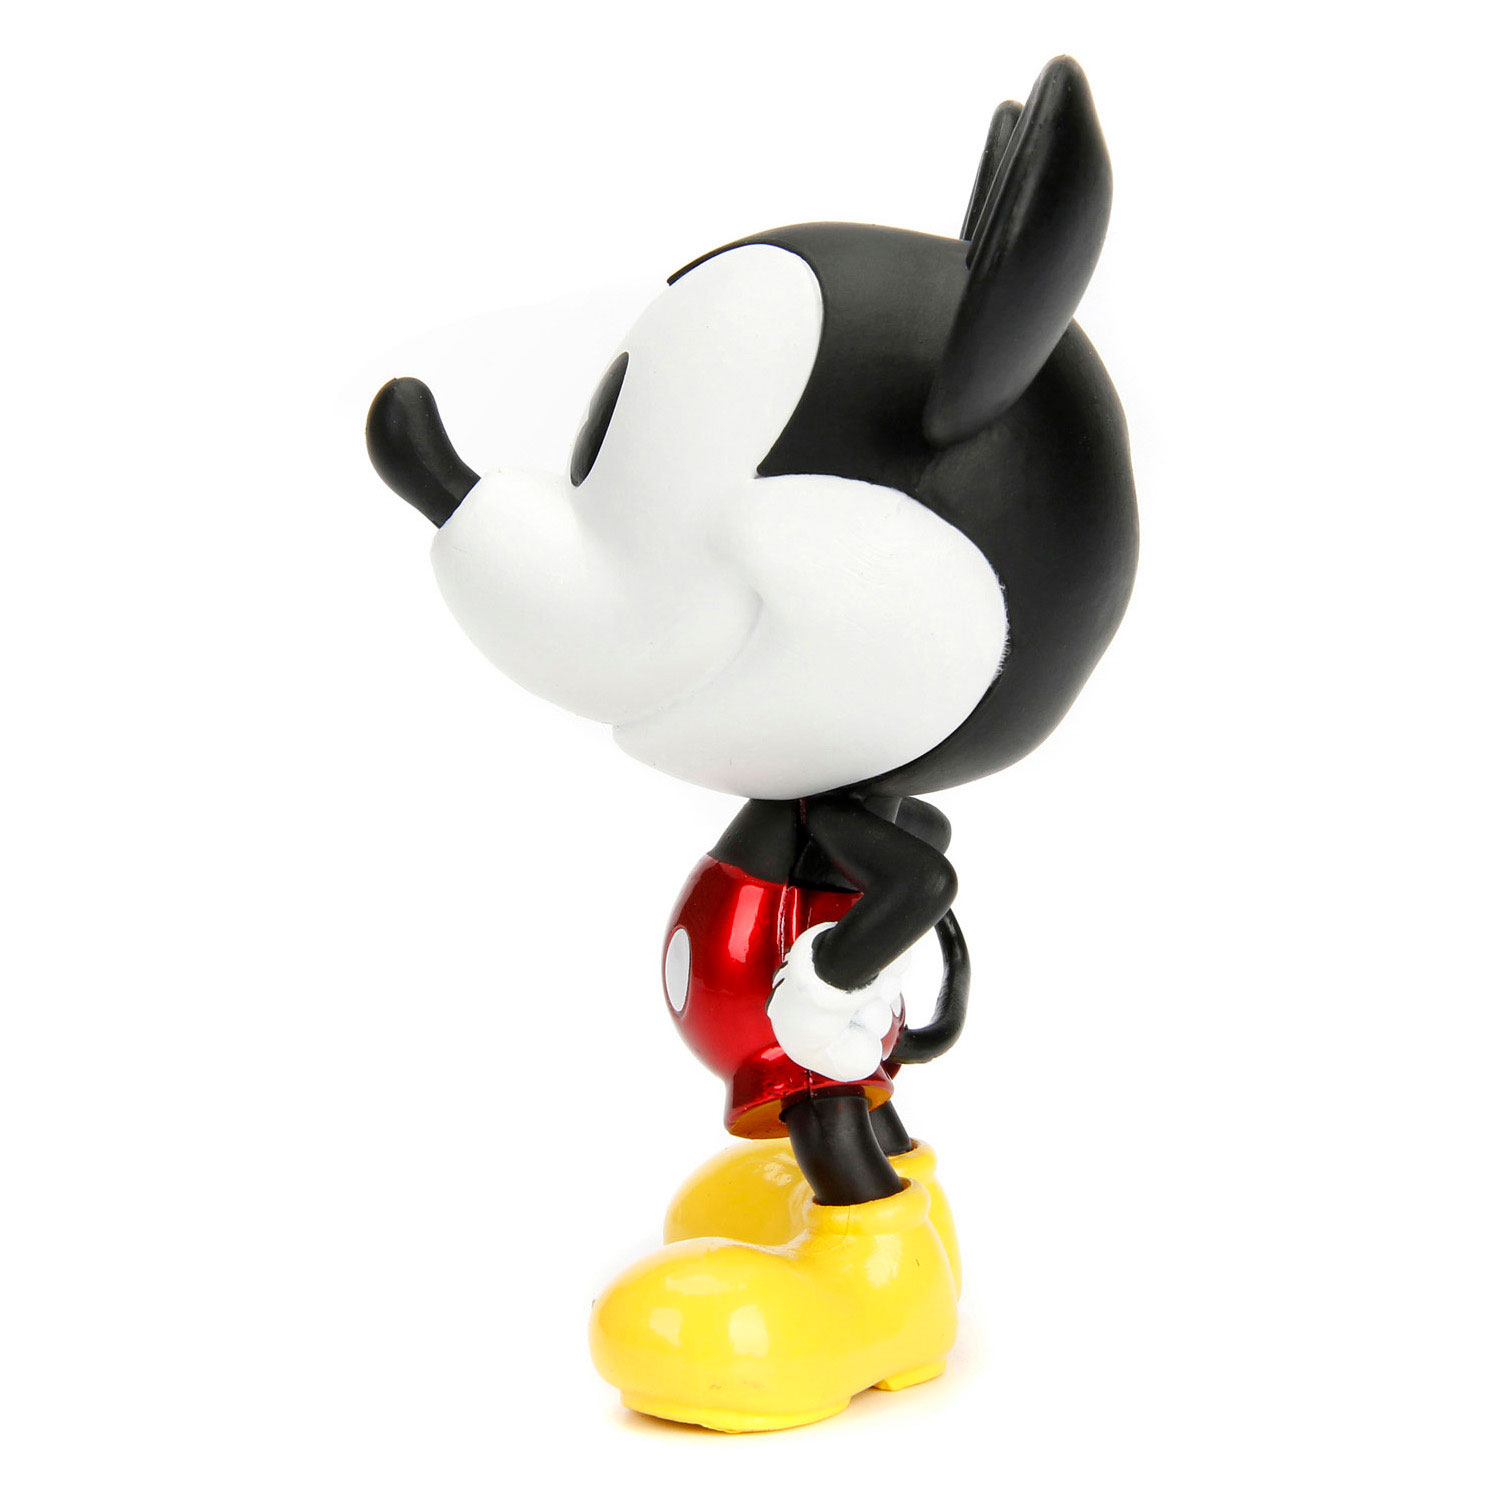 Jada Die-Cast Mickey Mouse klassische Figur, 10 cm